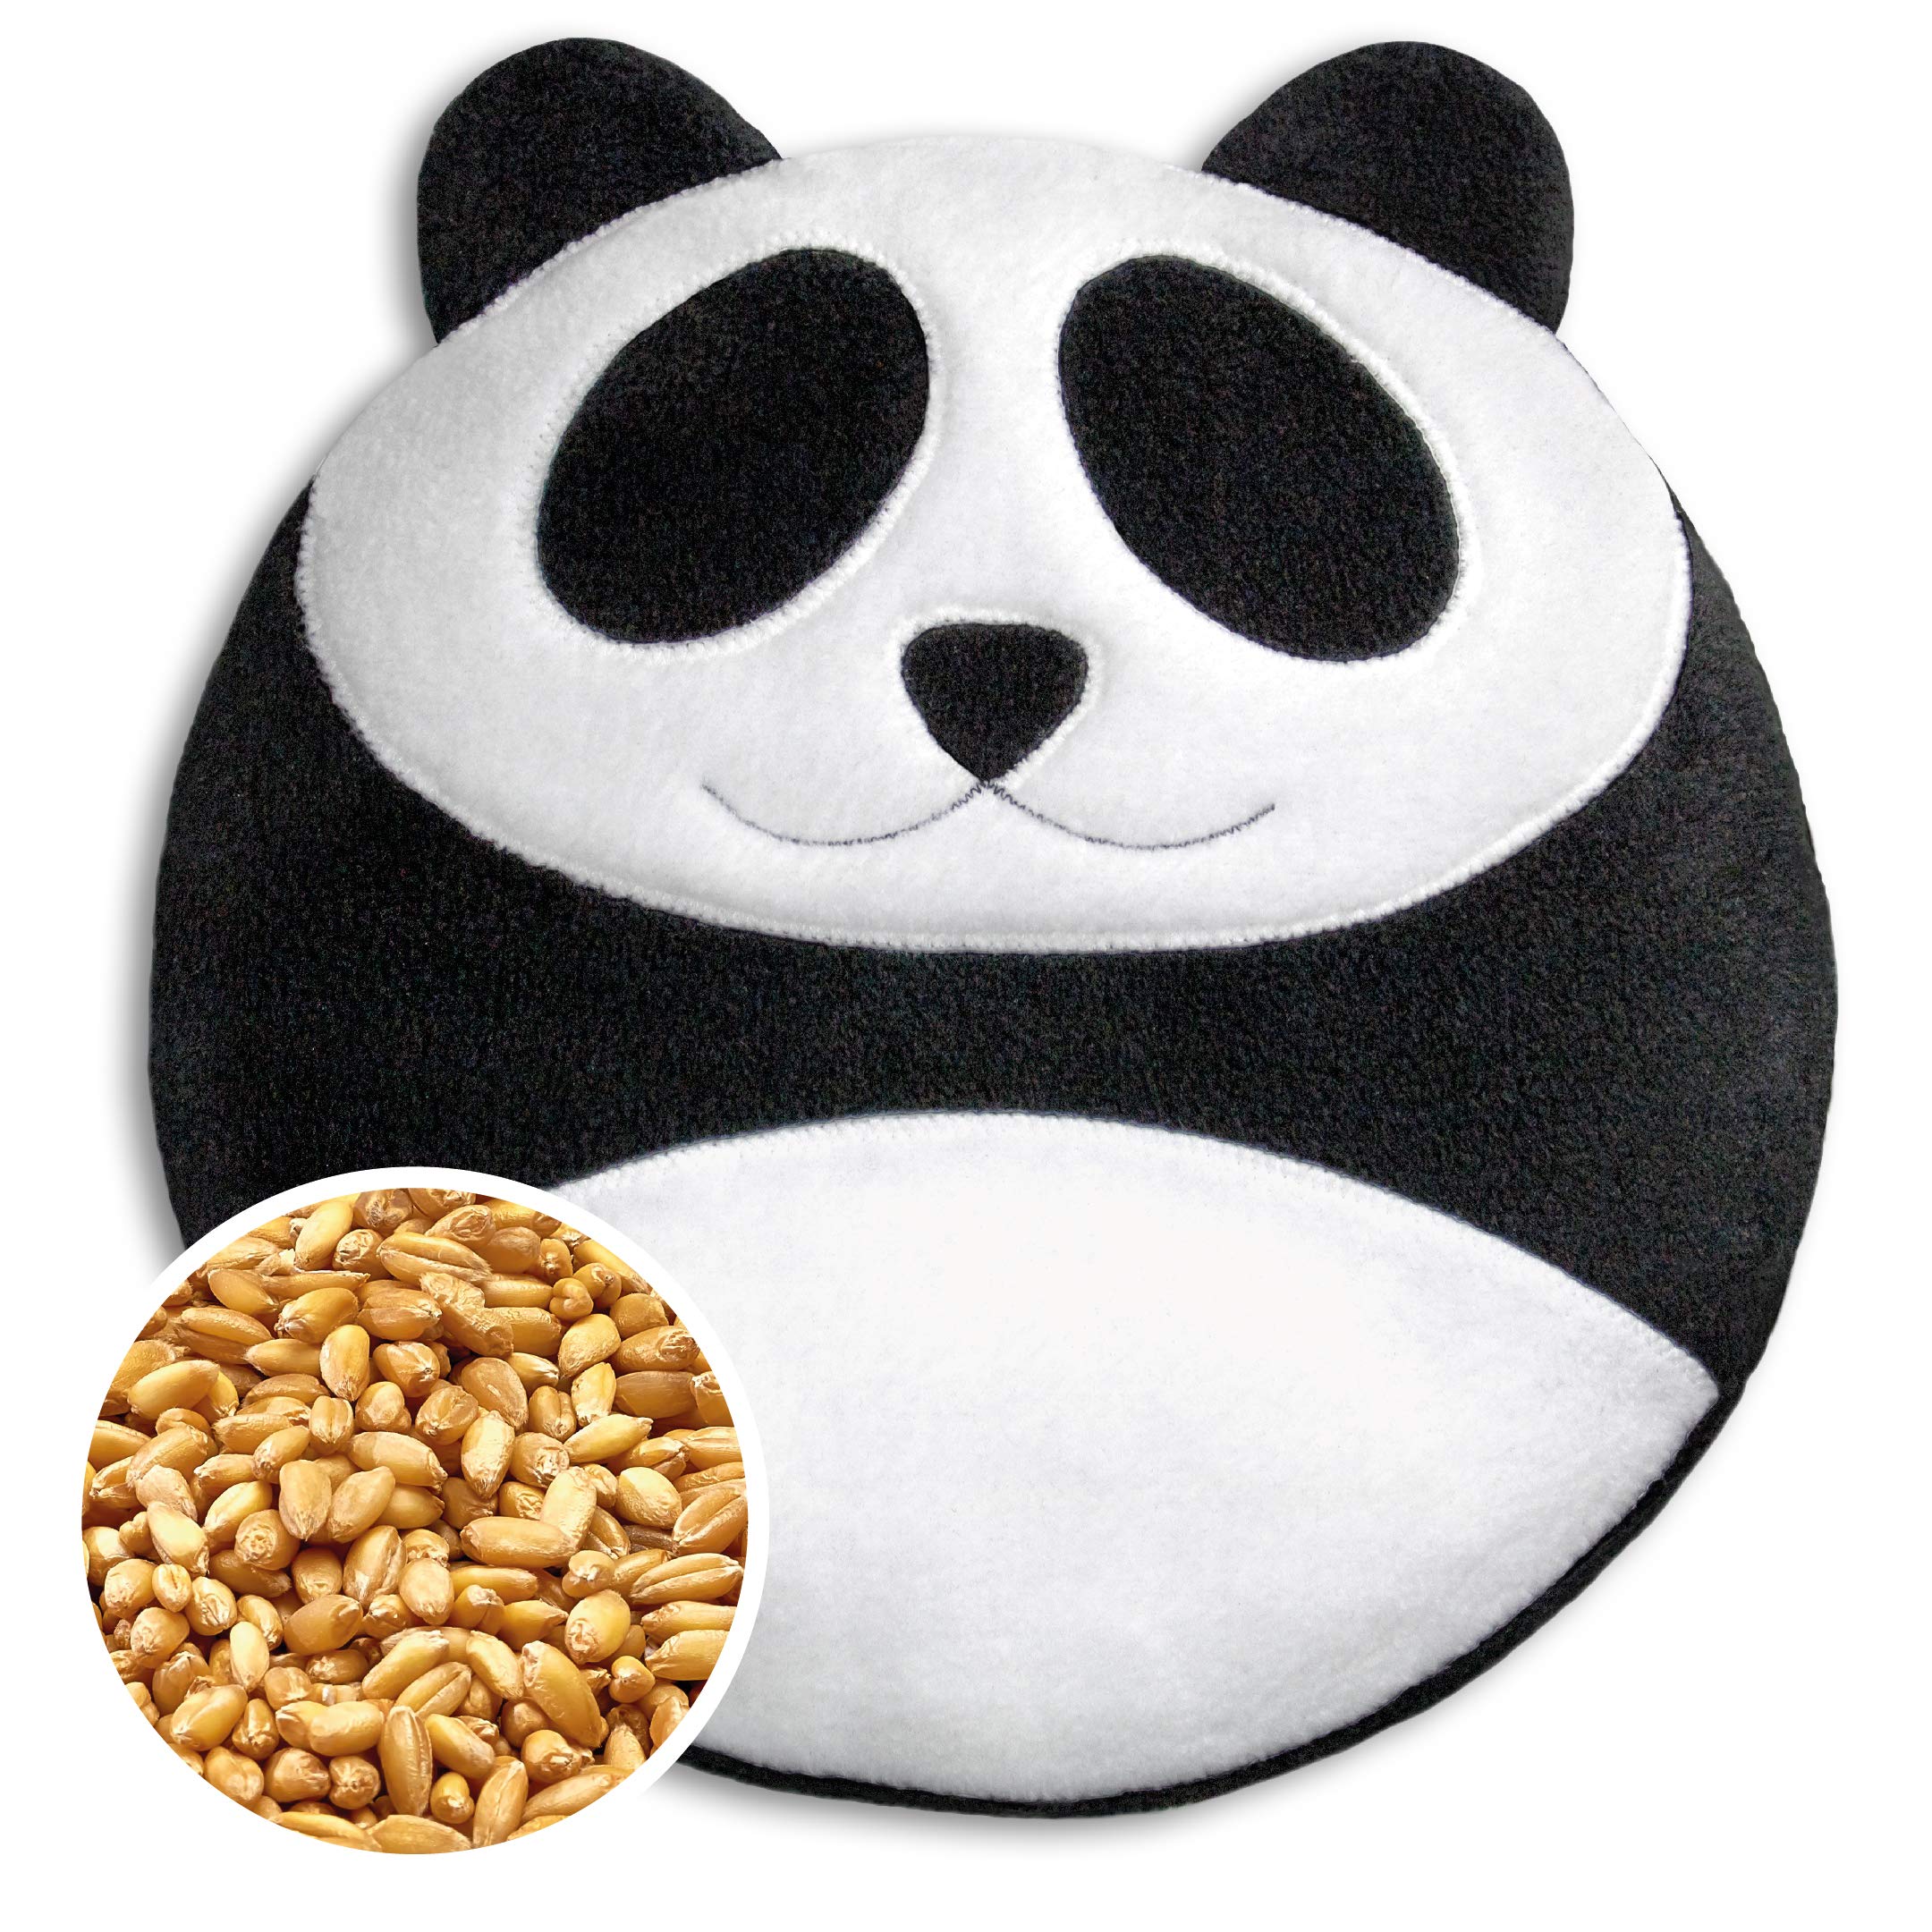 LESCHI Wärmekissen - 4 Kammer Körnerkissen für Mikrowelle - Tier Panda Schwarz, Weiß - anschmiegsames Getreidekissen mit Bio Weizen - ideal als Wärmespender im Winter und für den Bauch